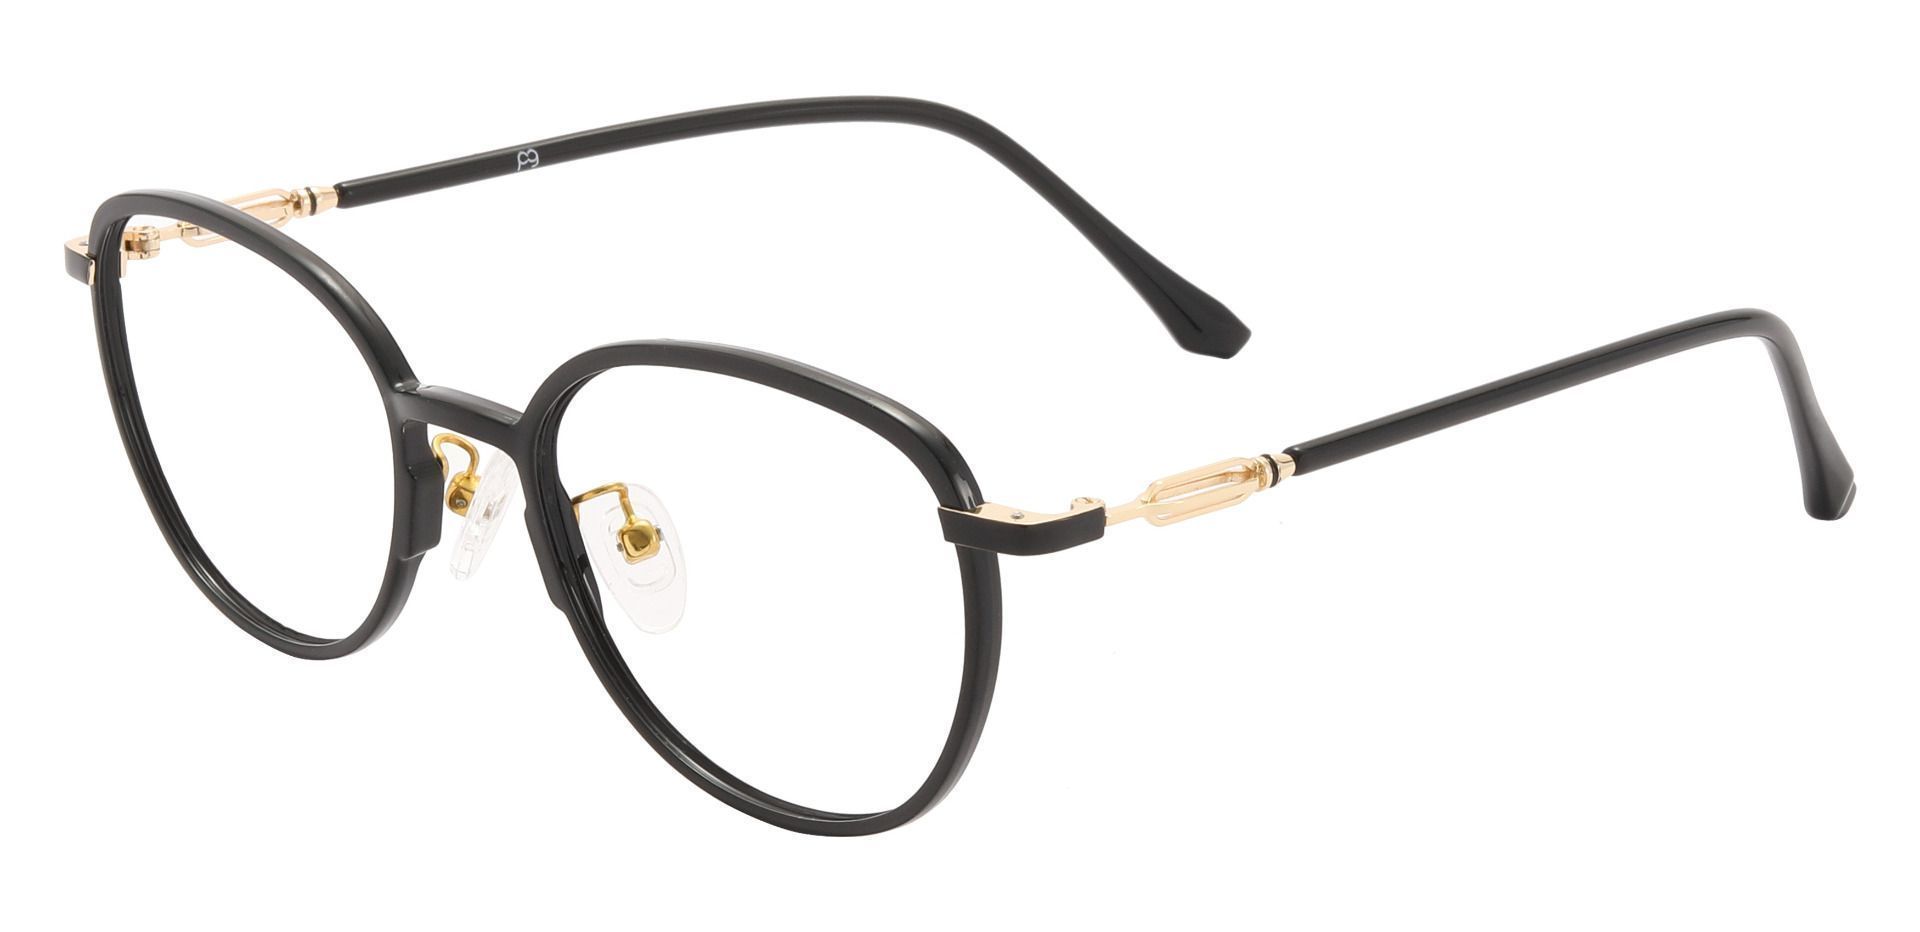 Newton Oval Prescription Glasses - Black